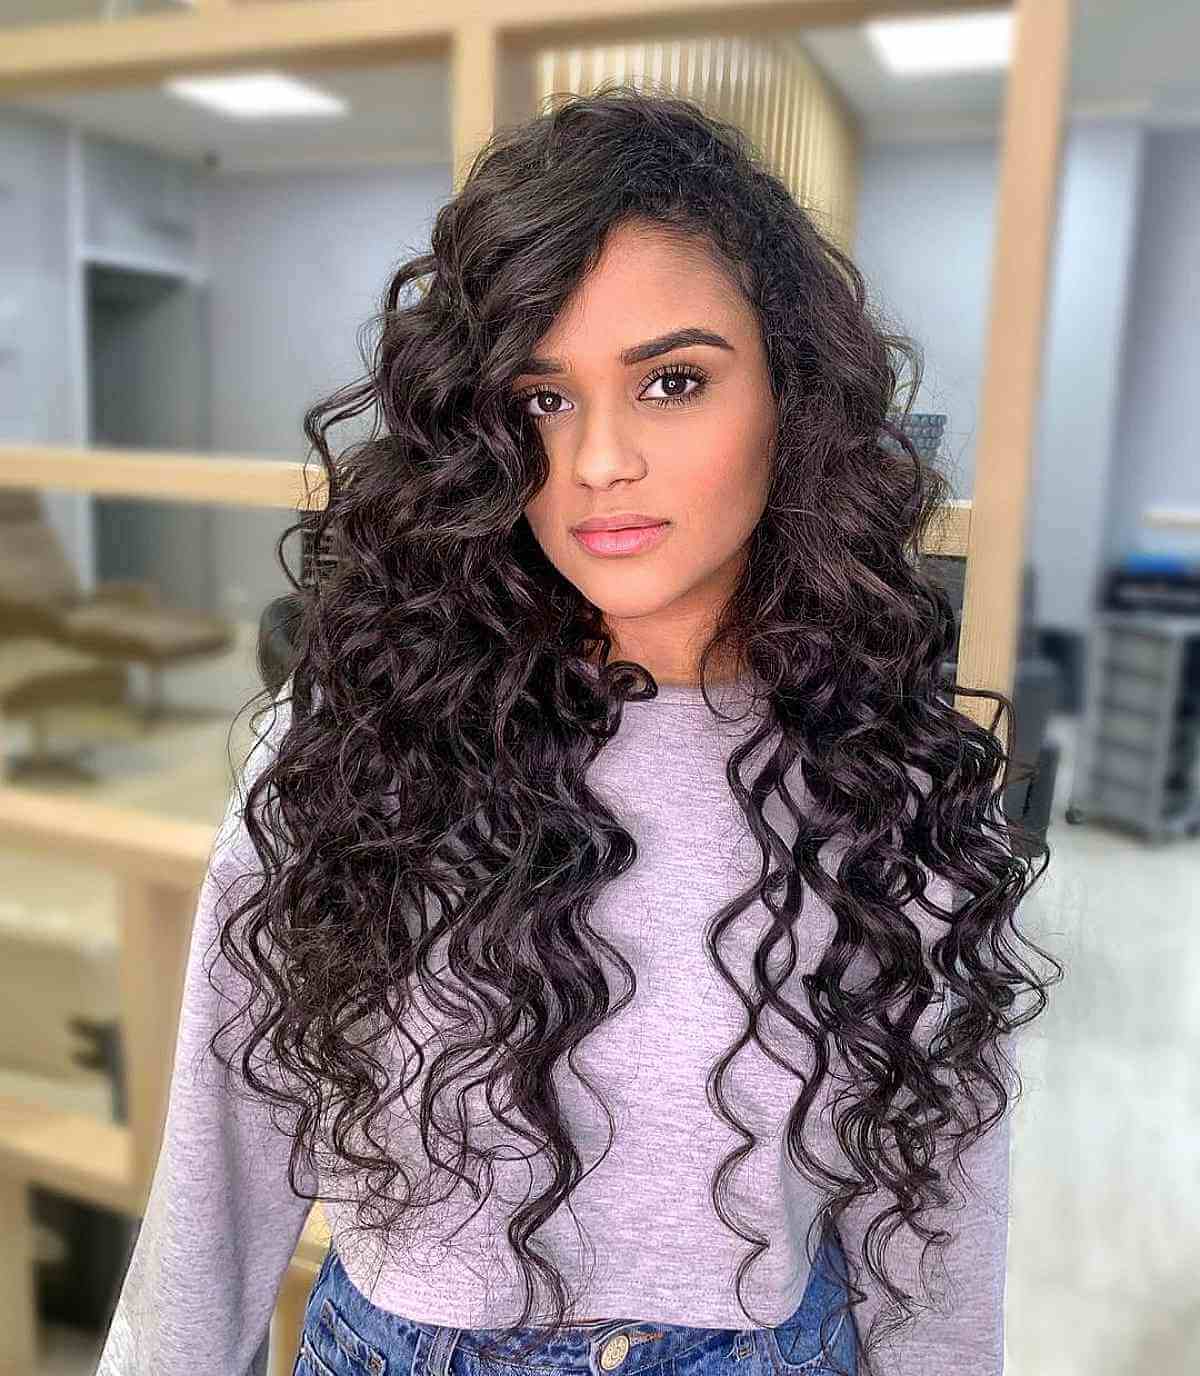 Waist length curly black hair